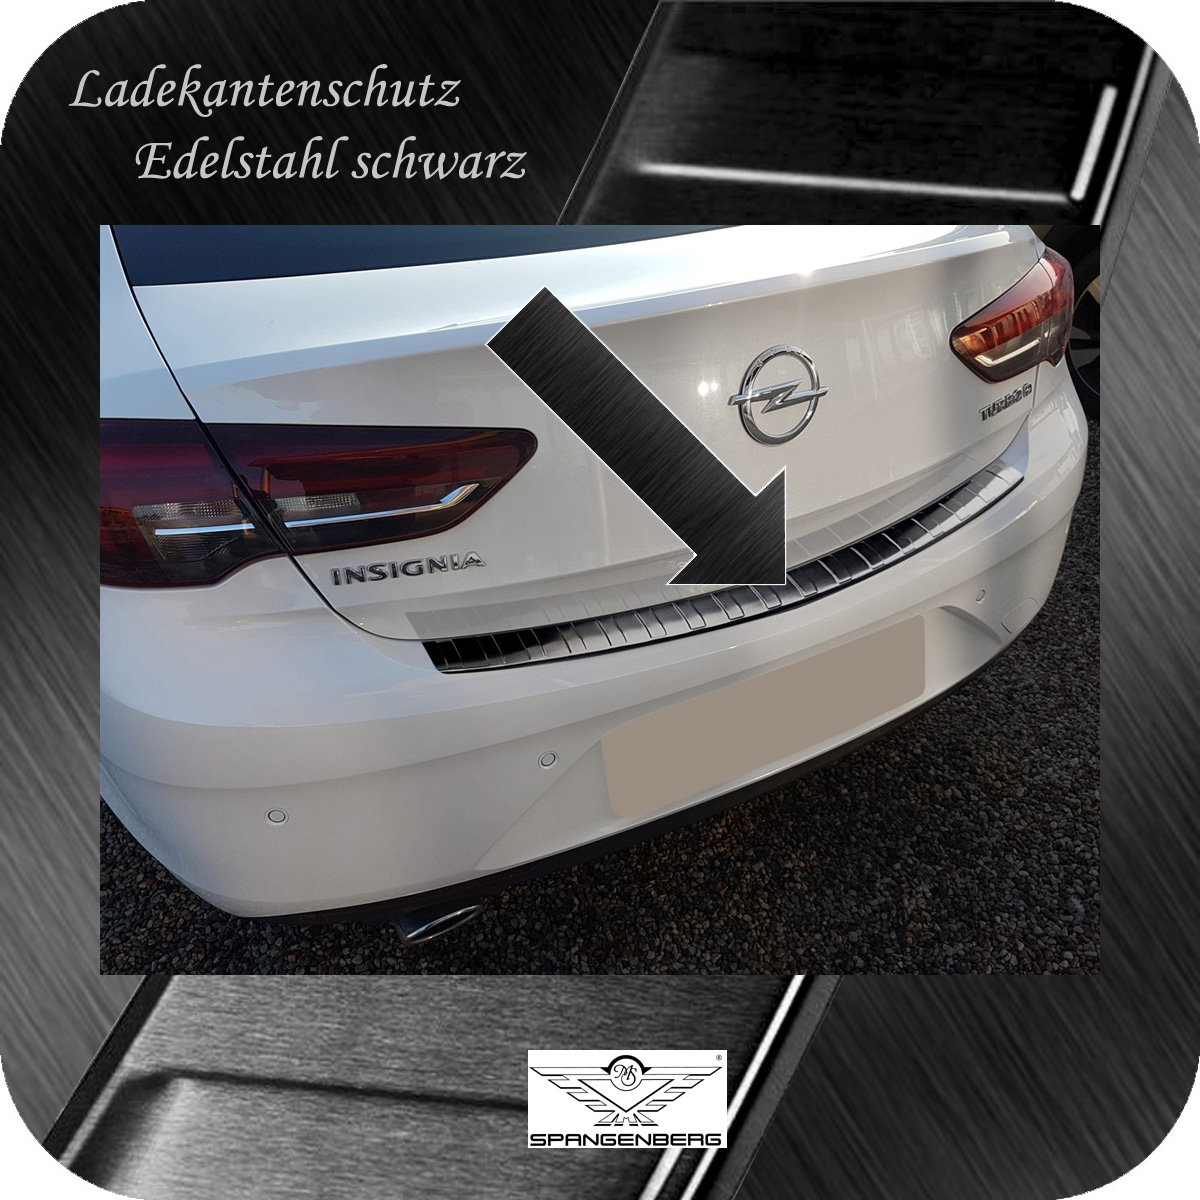 Ladekantenschutz Edelstahl schwarz für Opel Insignia B Grand Sport 2017- 3245158